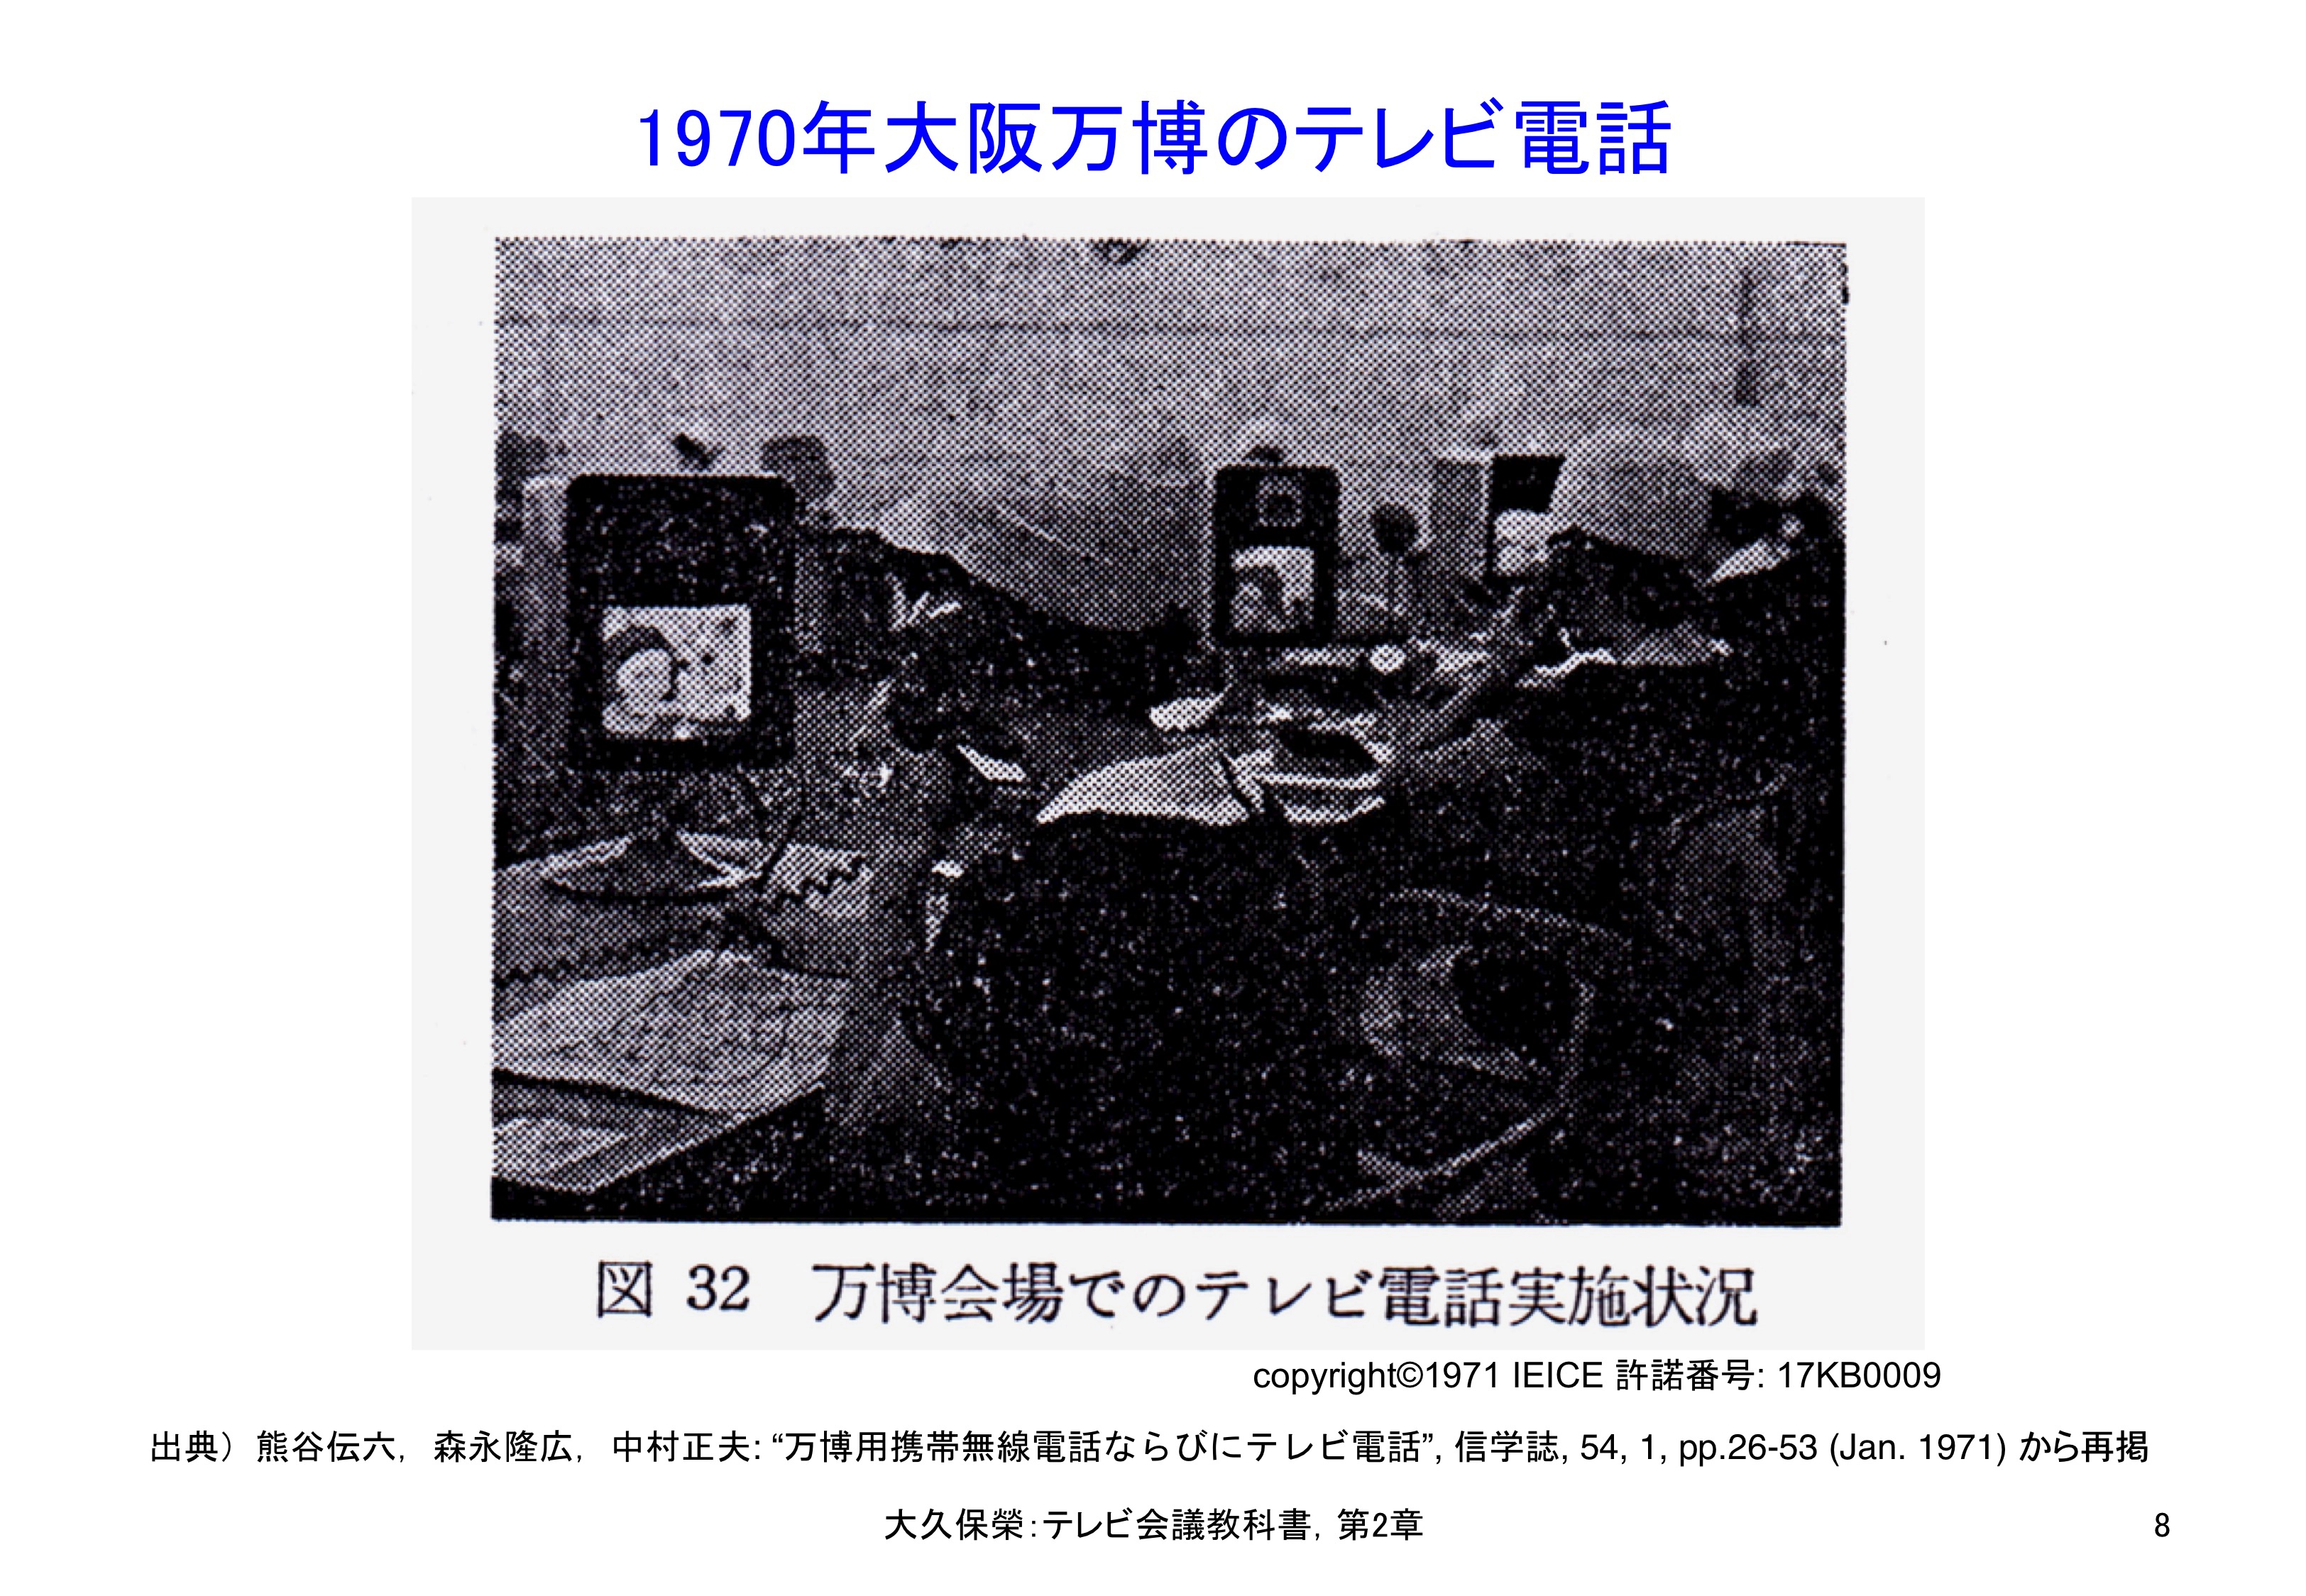 図2-8 大阪万博の1MHz帯域テレビ電話システム